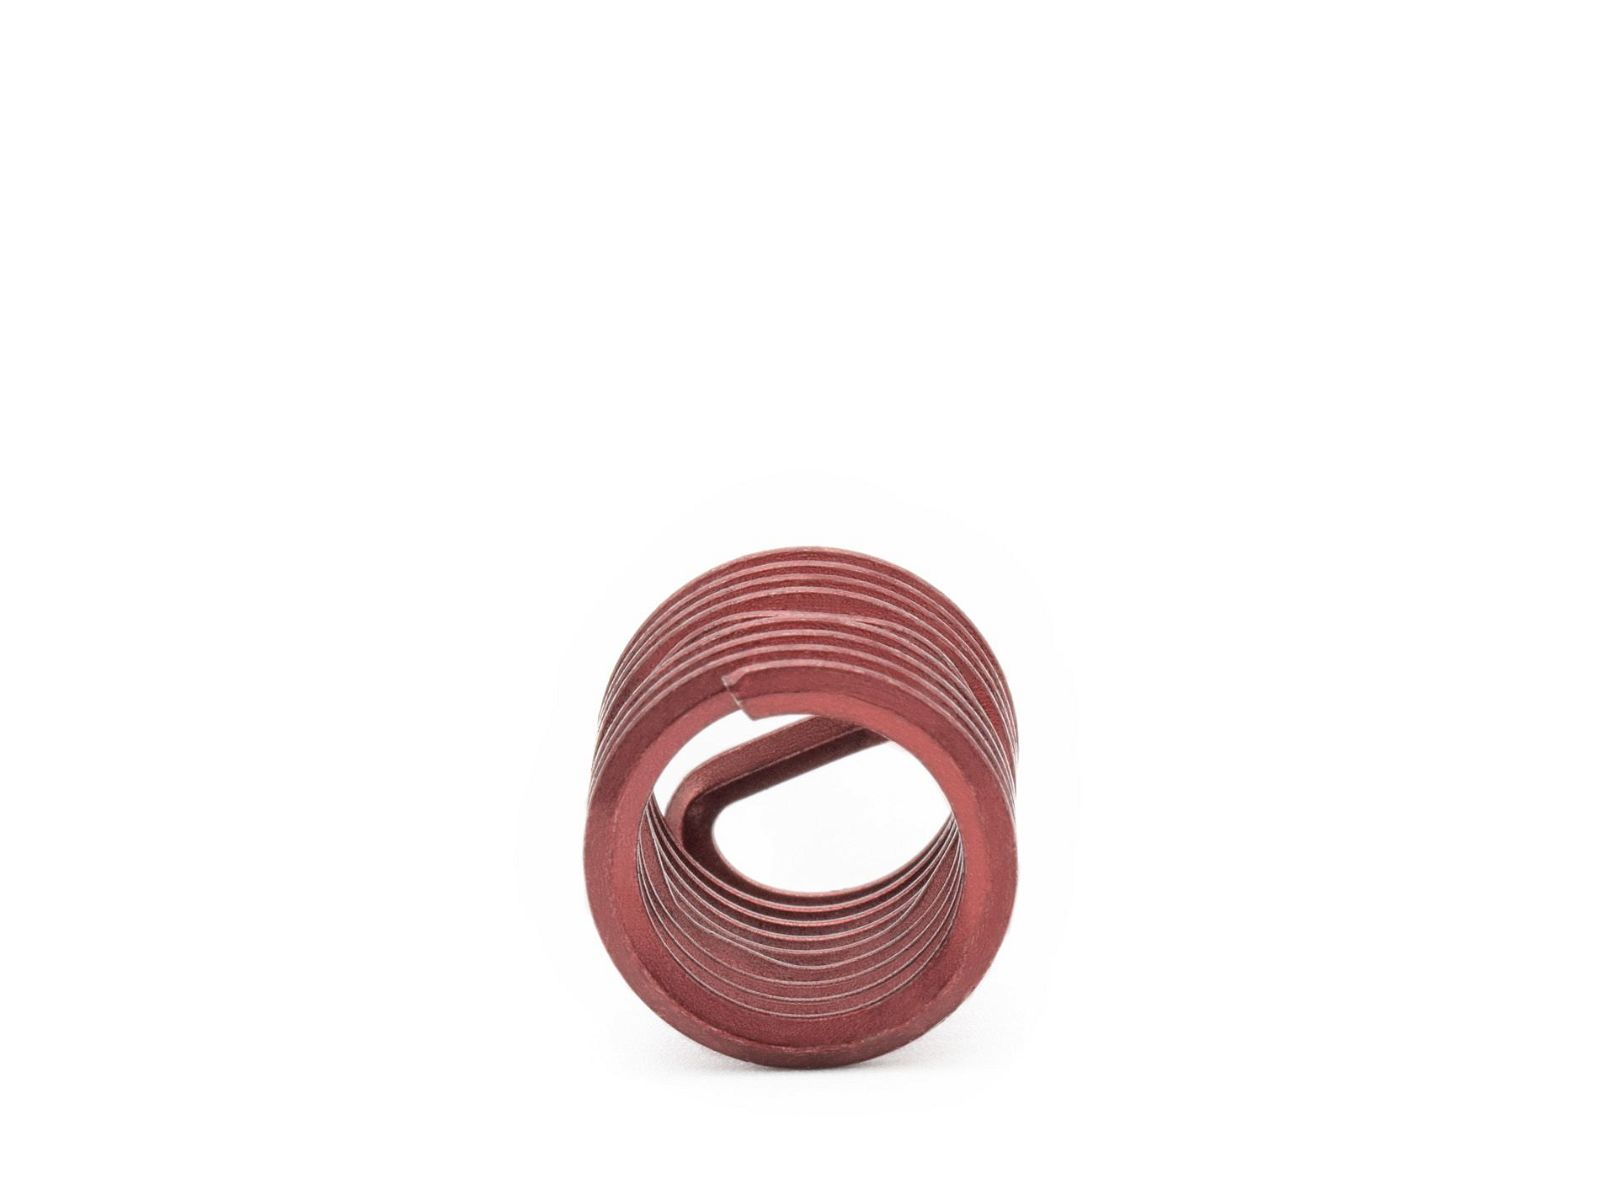 BaerCoil Wire Thread Inserts BA 2 - 1.5 D (7.05 mm) - screw grip (screw locking) - 100 pcs.